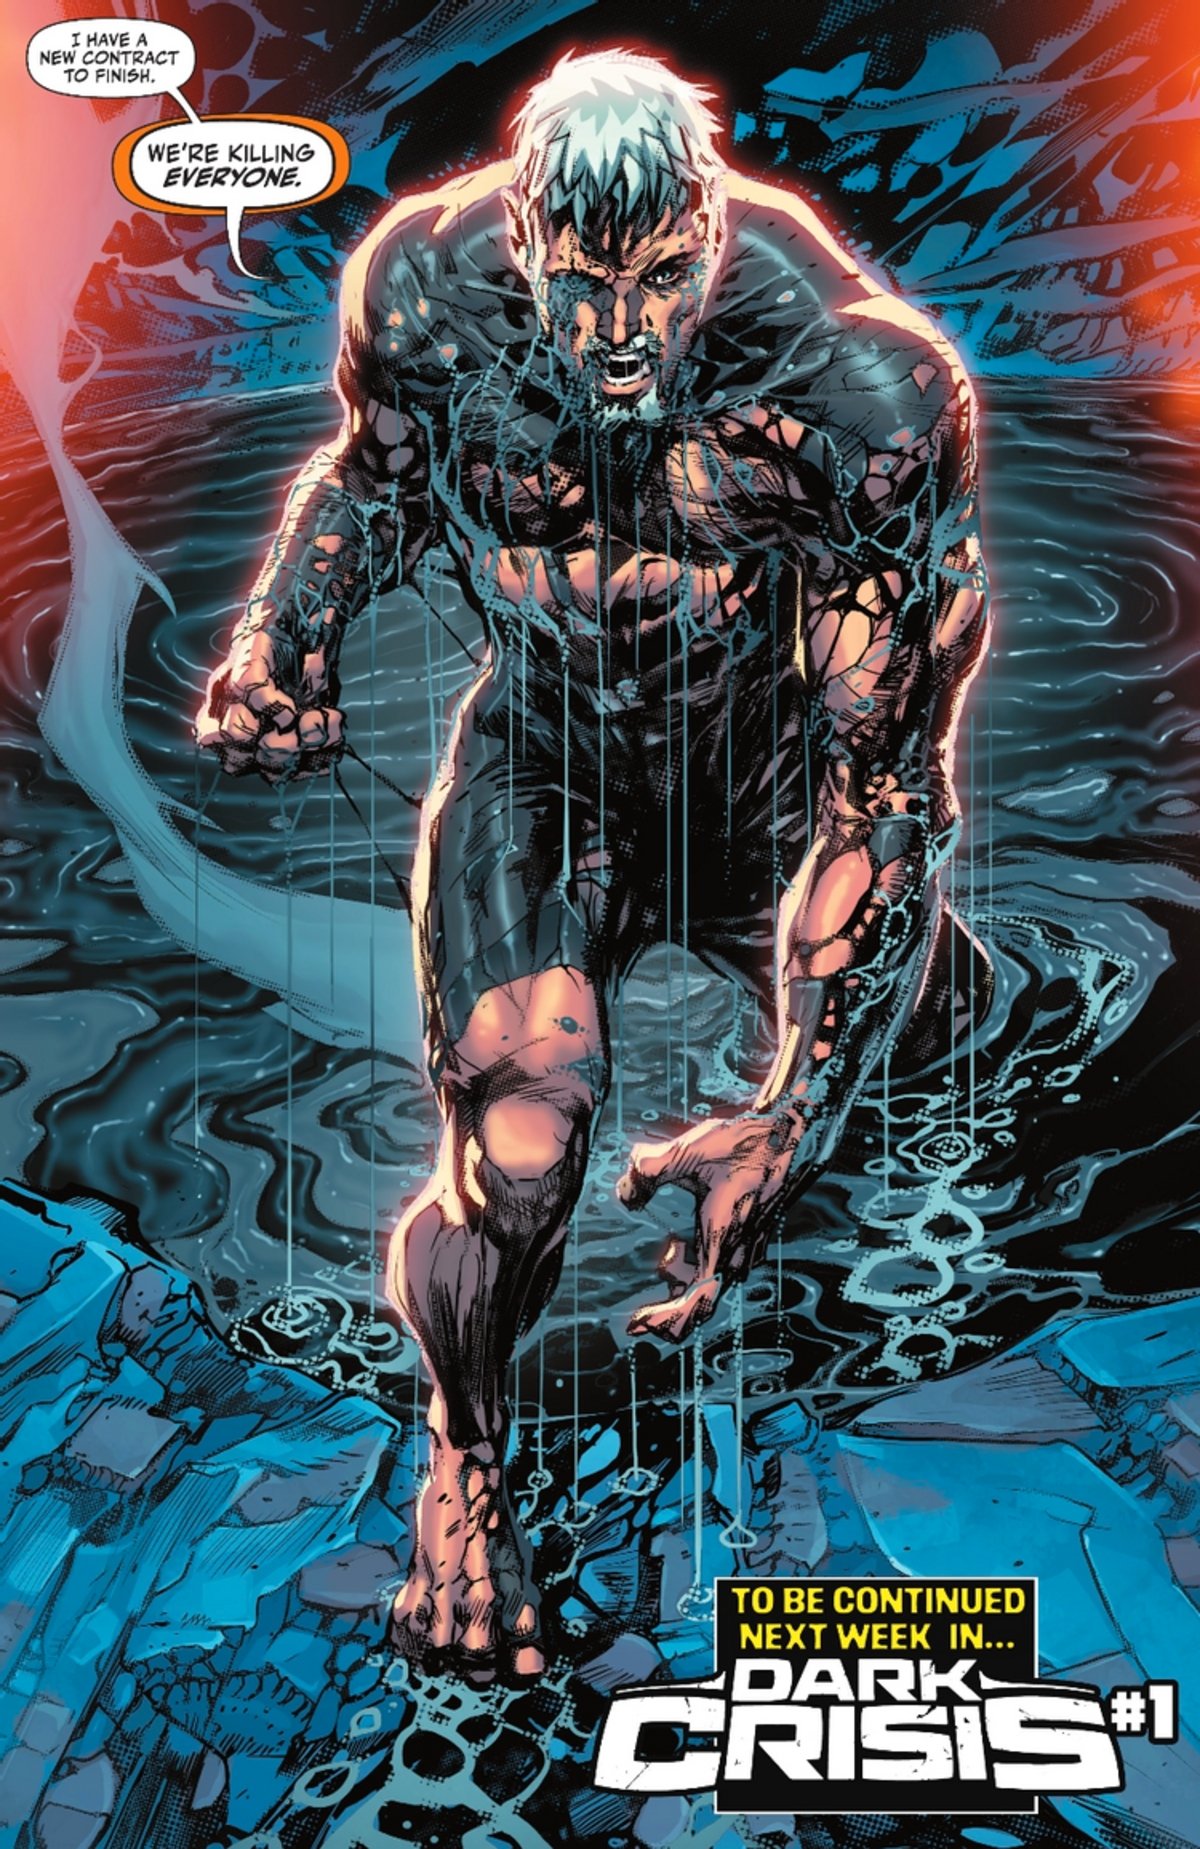 DC resucita a un peligroso villano de Batman de una forma espectacular